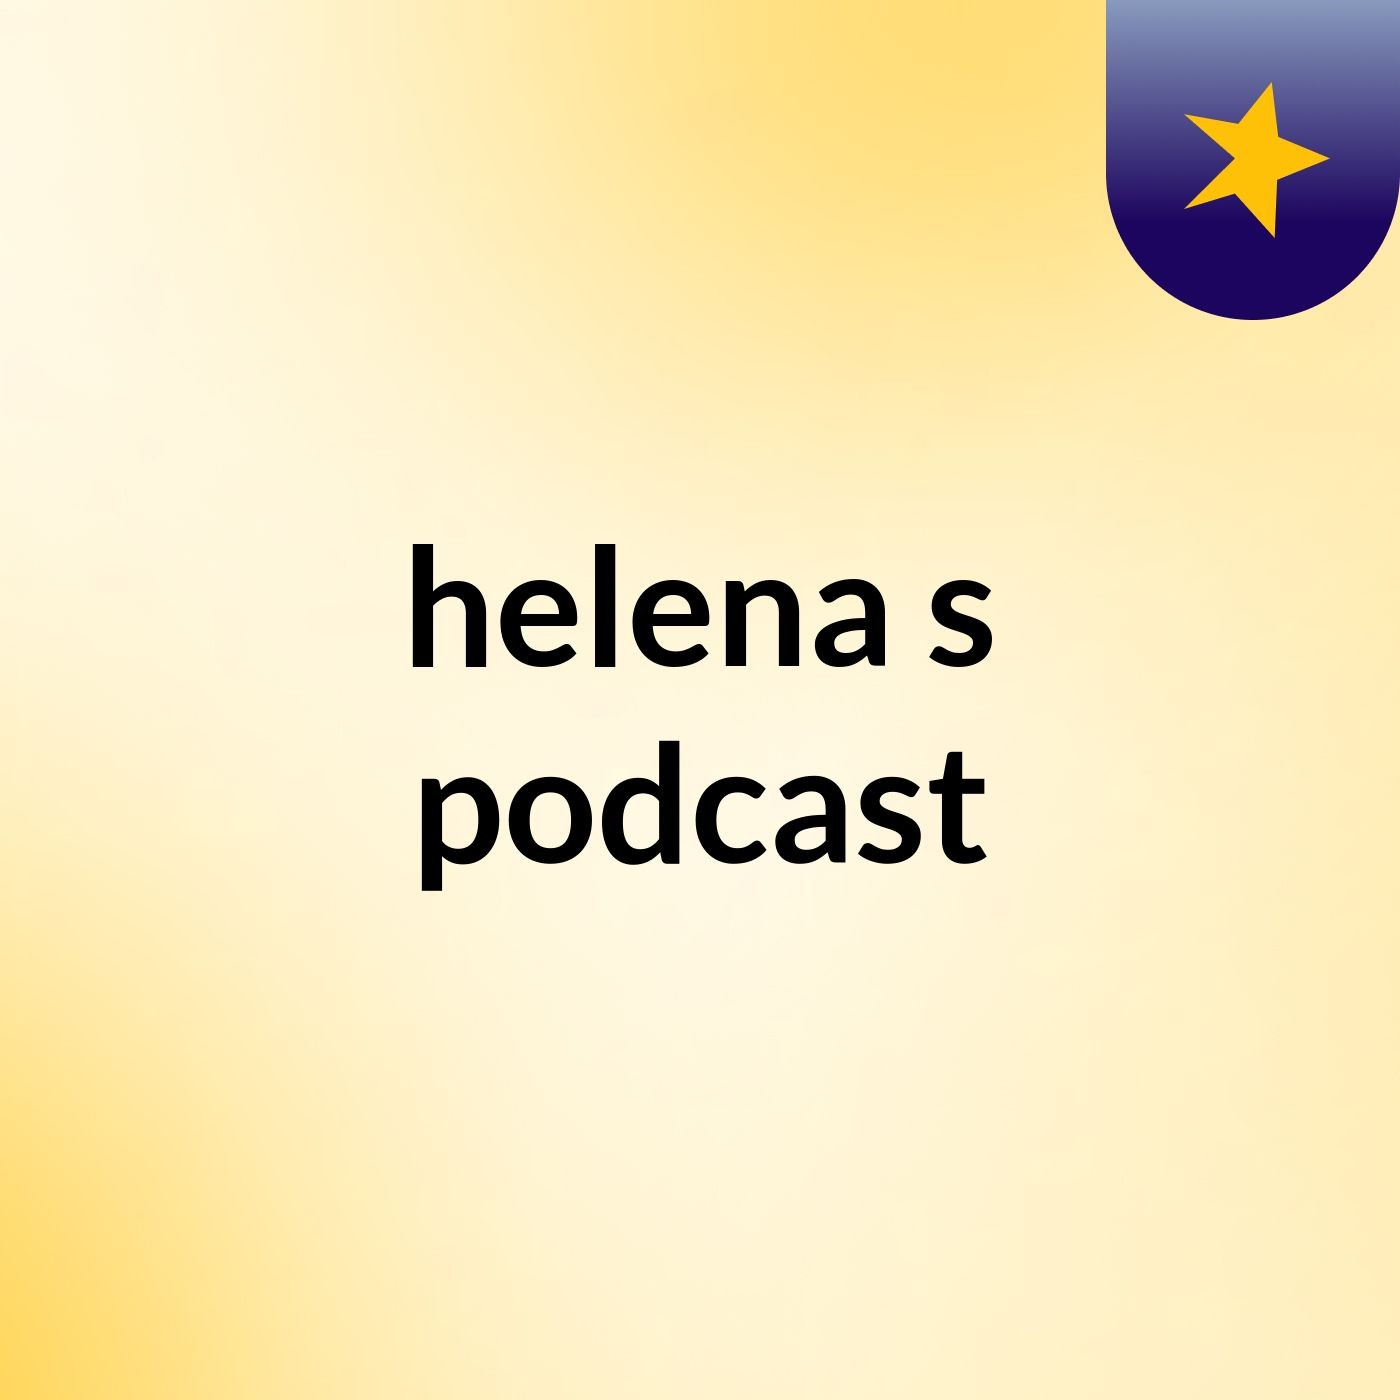 helena's podcast